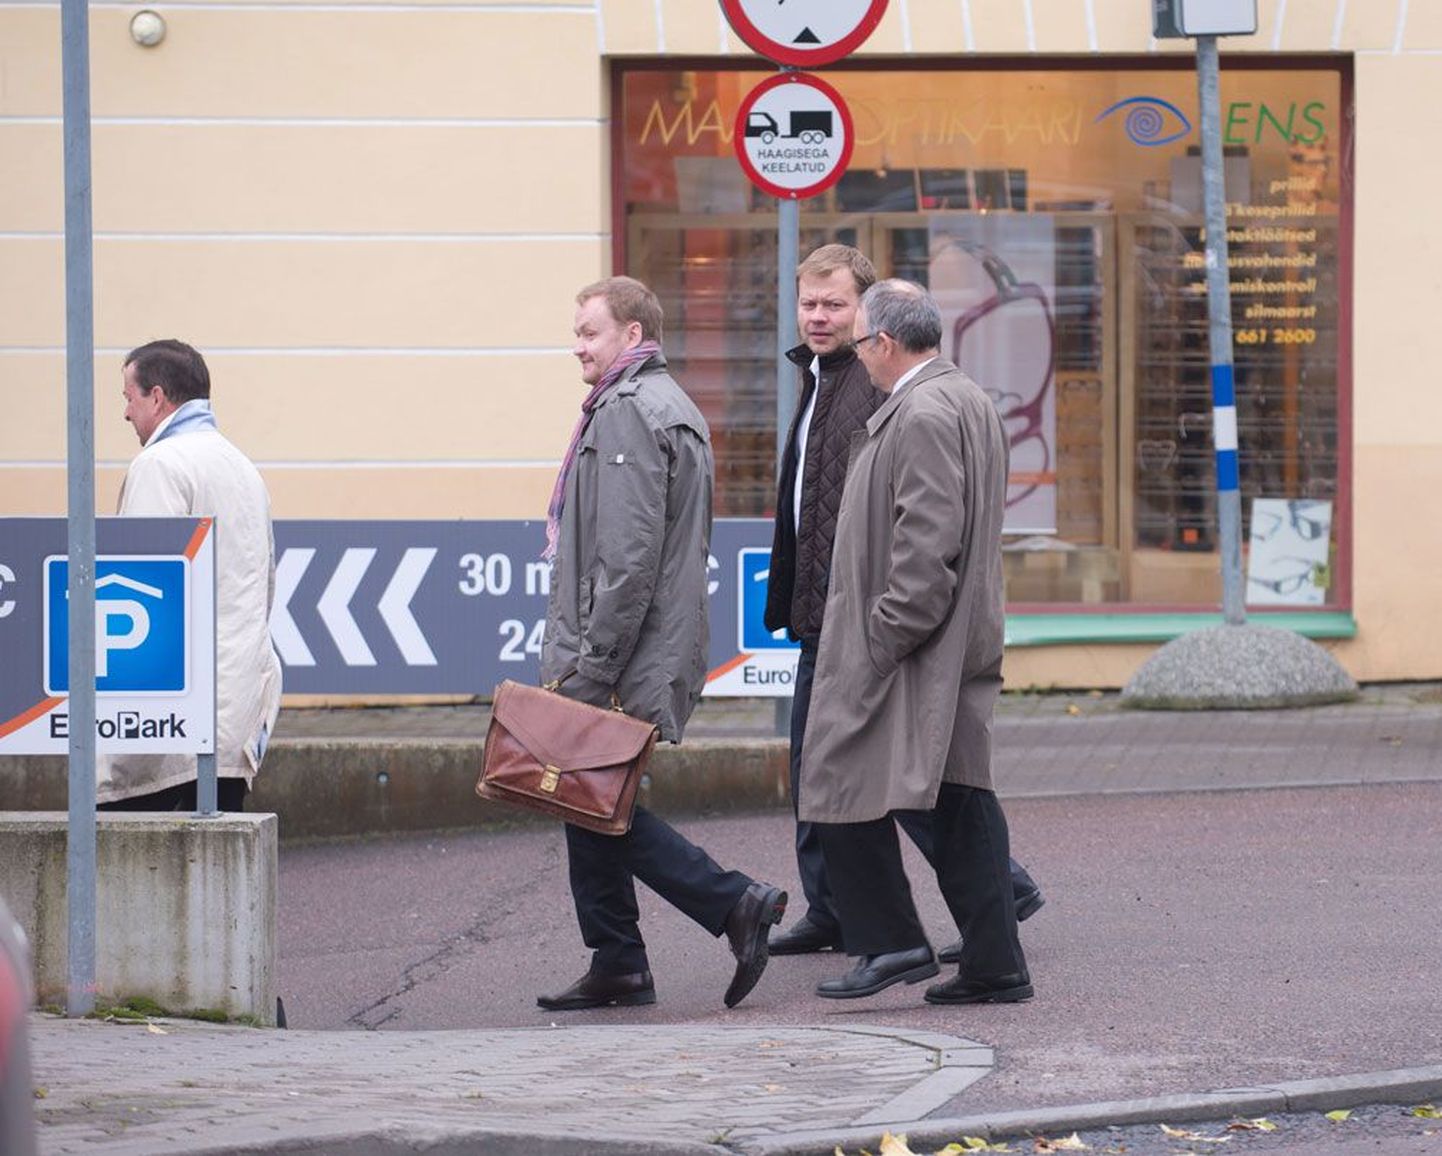 Kristjan Rahu (paremalt teine) Tallinna kesklinnas koos Dalkia esindajate ja jurist Harri Beekmaniga (paremalt kolmas) – leping sõlmitud, kolmandik Eesti toasoojaärist taskus.